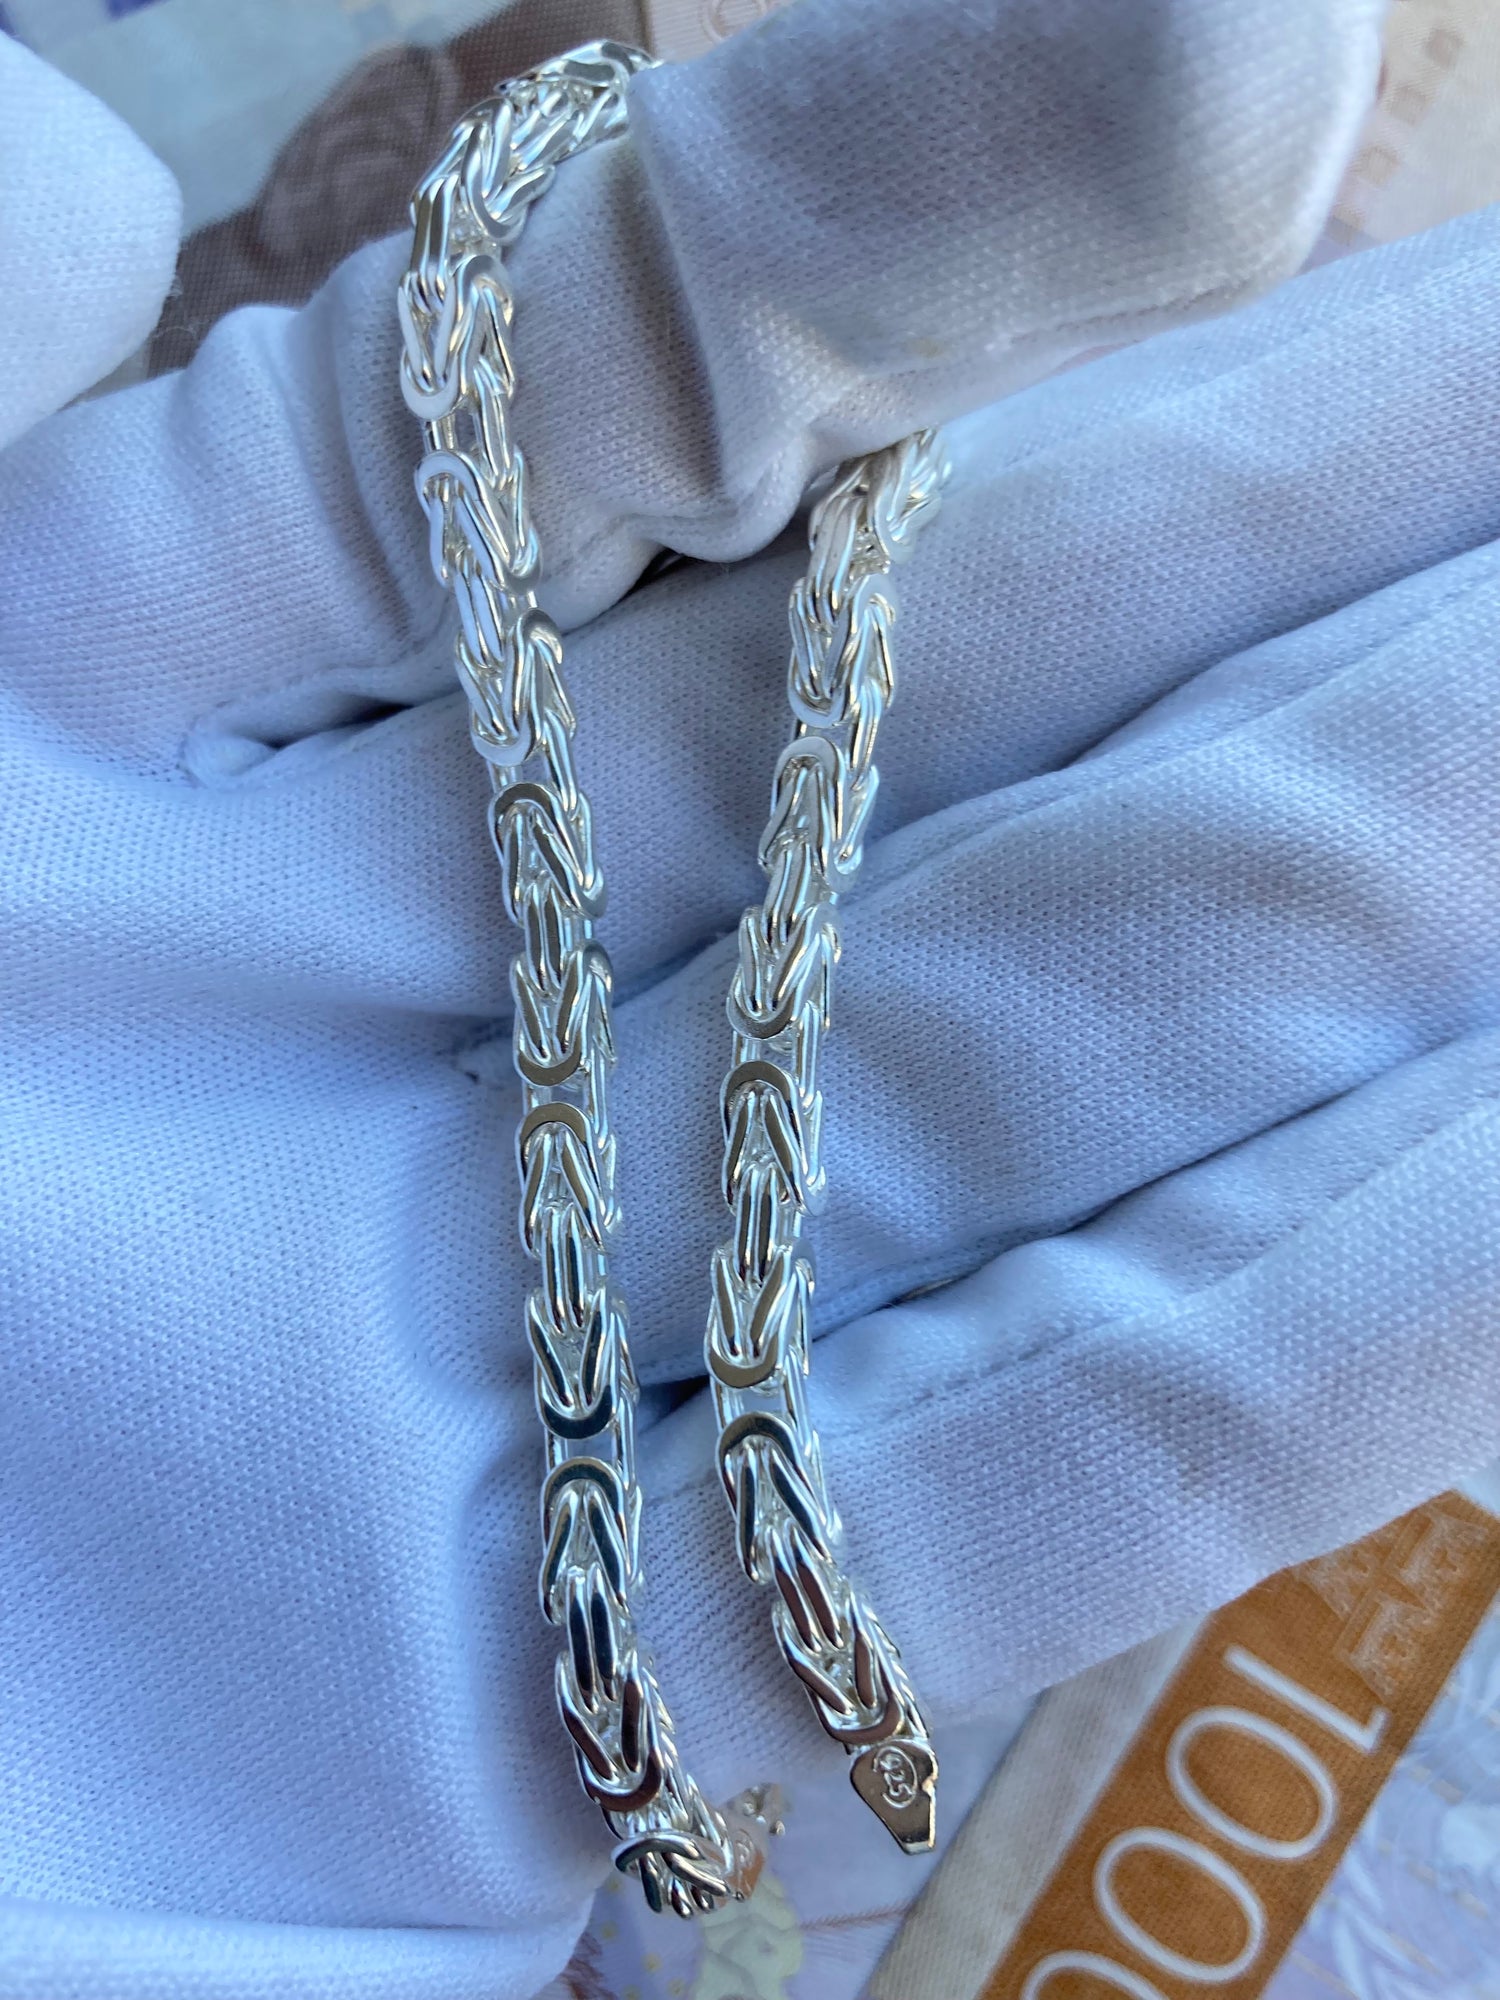 Kejsarlänk Halsband 4.5mm - 925 Silver - Kejsar